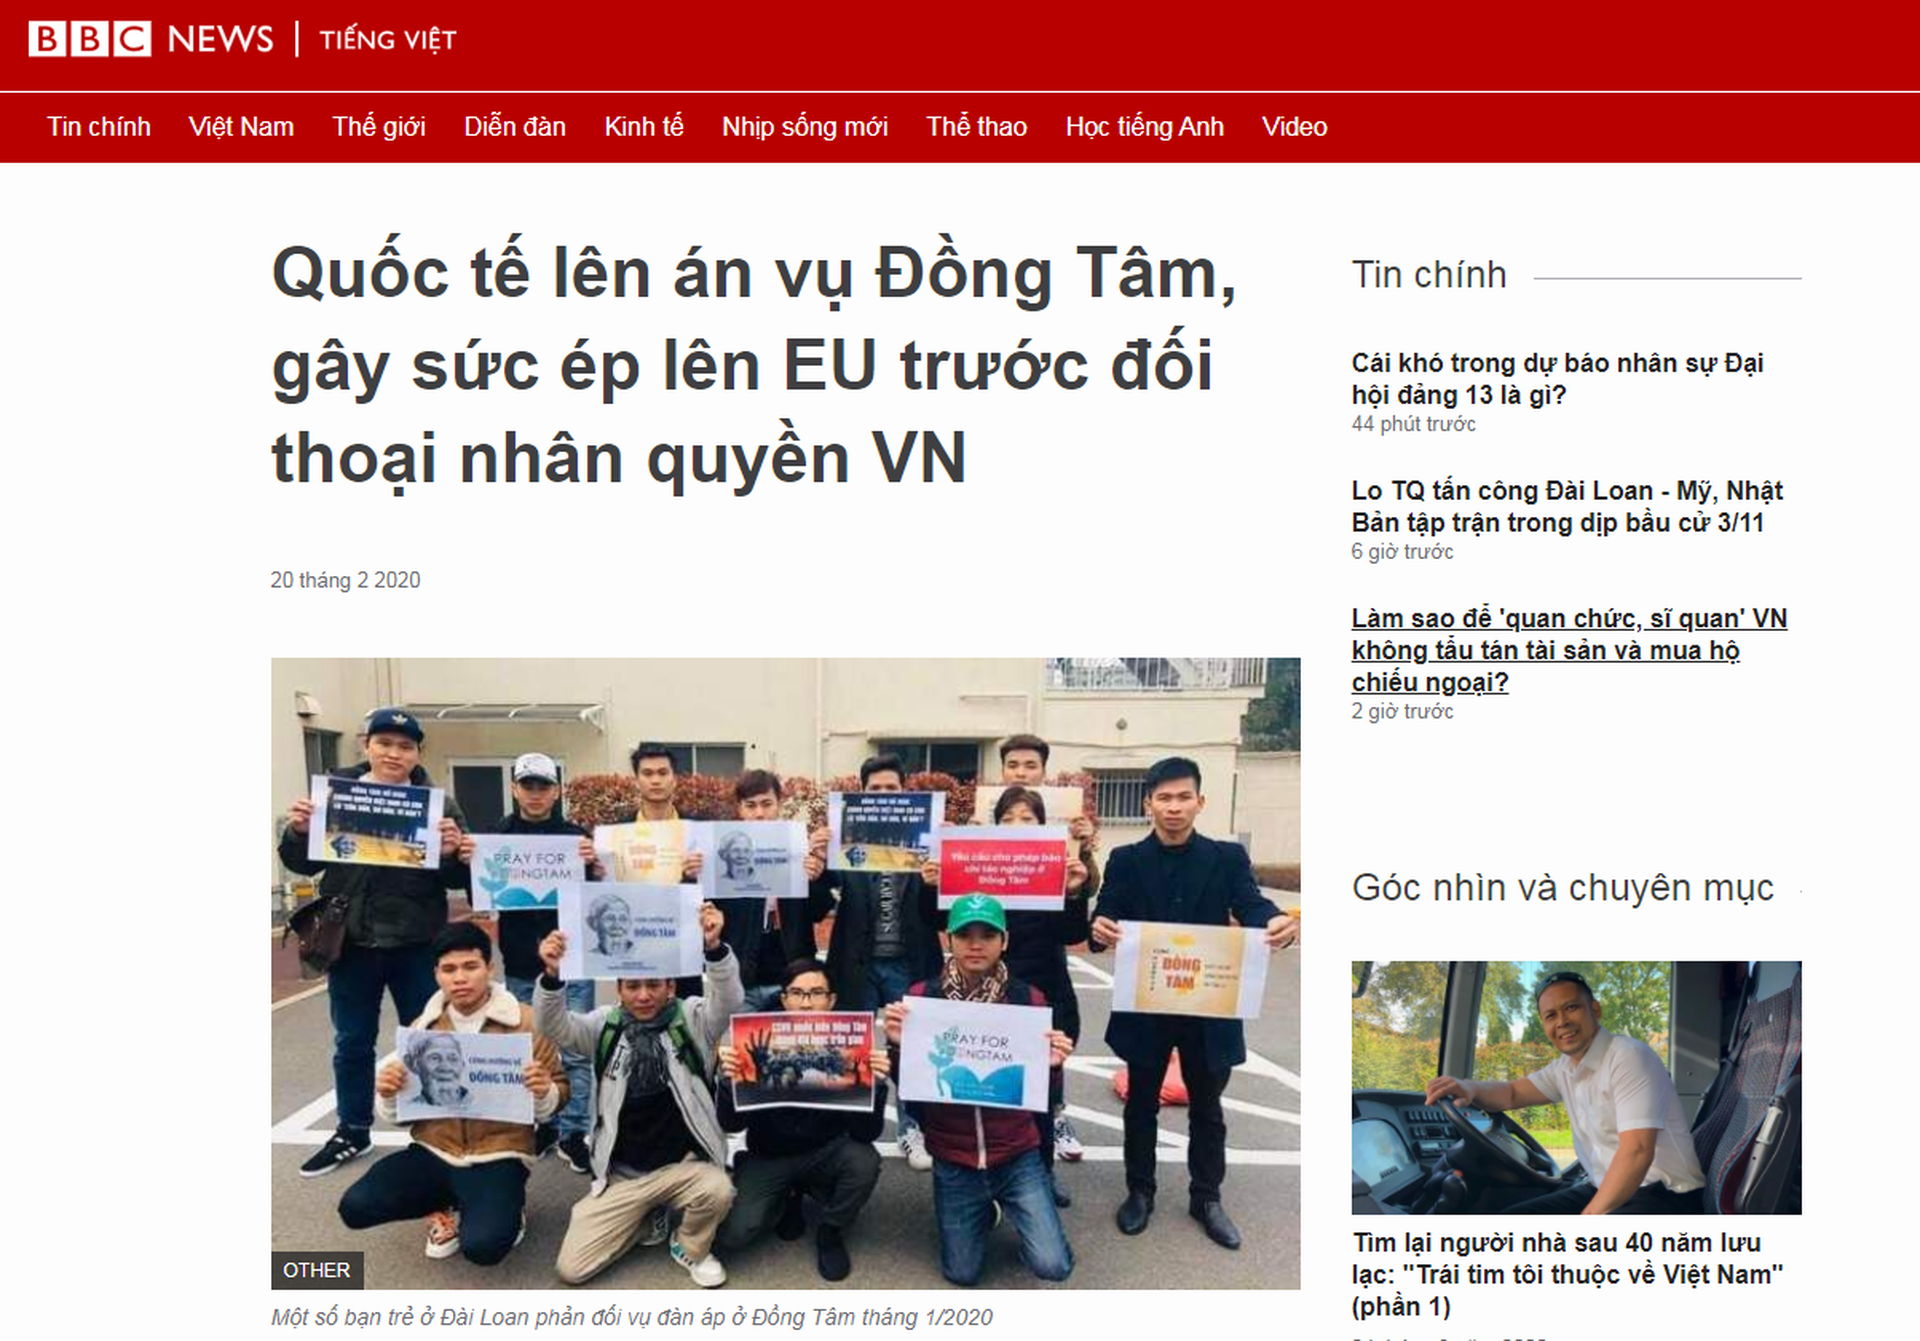 同心案刚传出死人的消息，越南的海外活动家们就立刻动作起来。不仅在欧洲等地拍照声援，更建议欧盟应留意河内的人权状况。（BBC越南语版截图）